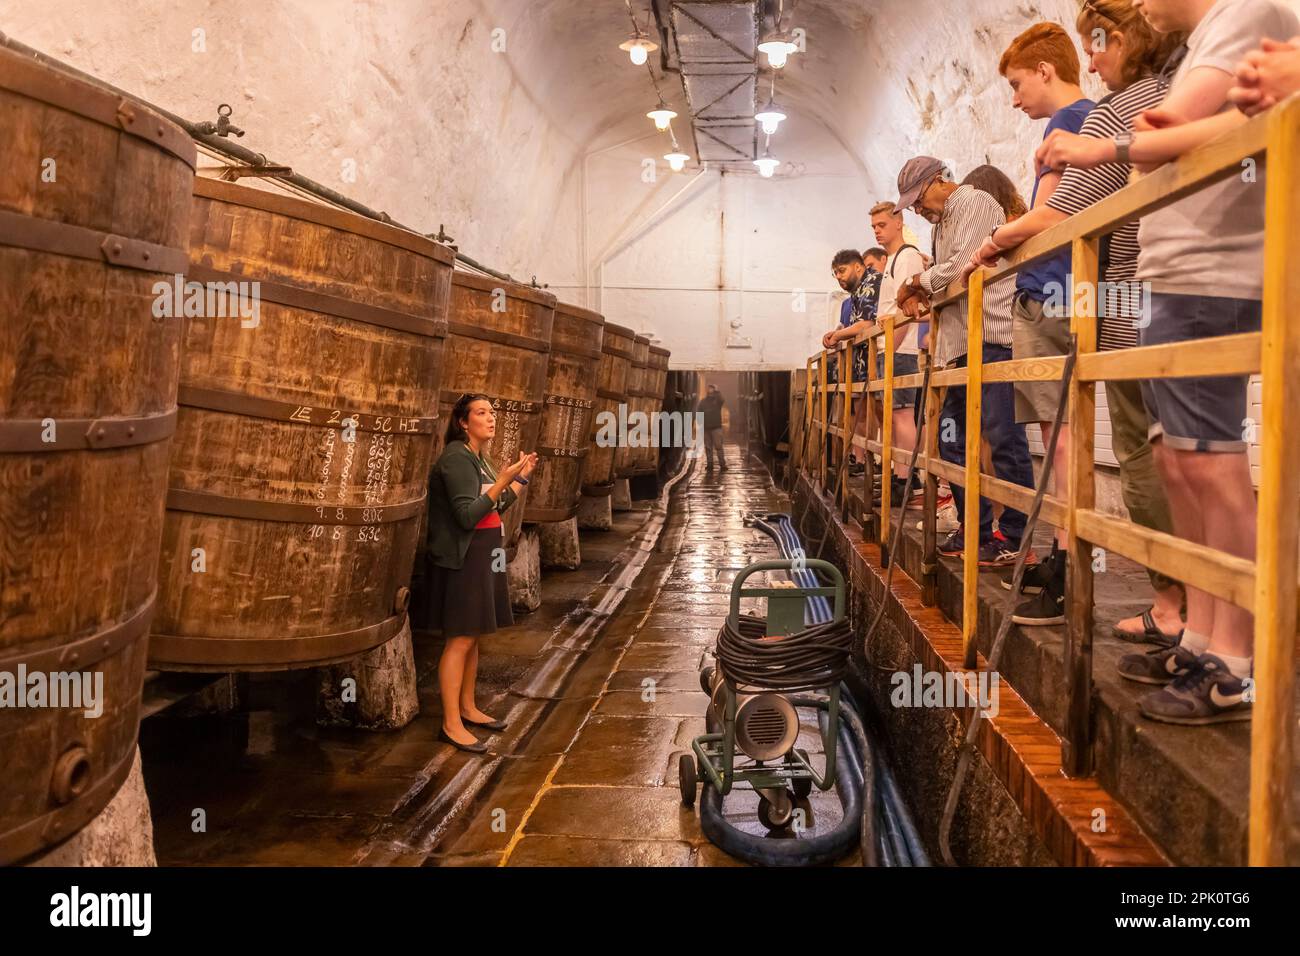 PILSEN, REPÚBLICA CHECA, EUROPA - Cervecería Pilsner Urquell. El guía turístico habla con los visitantes, por cubas históricas de elaboración de cerveza, barriles viejos. Foto de stock